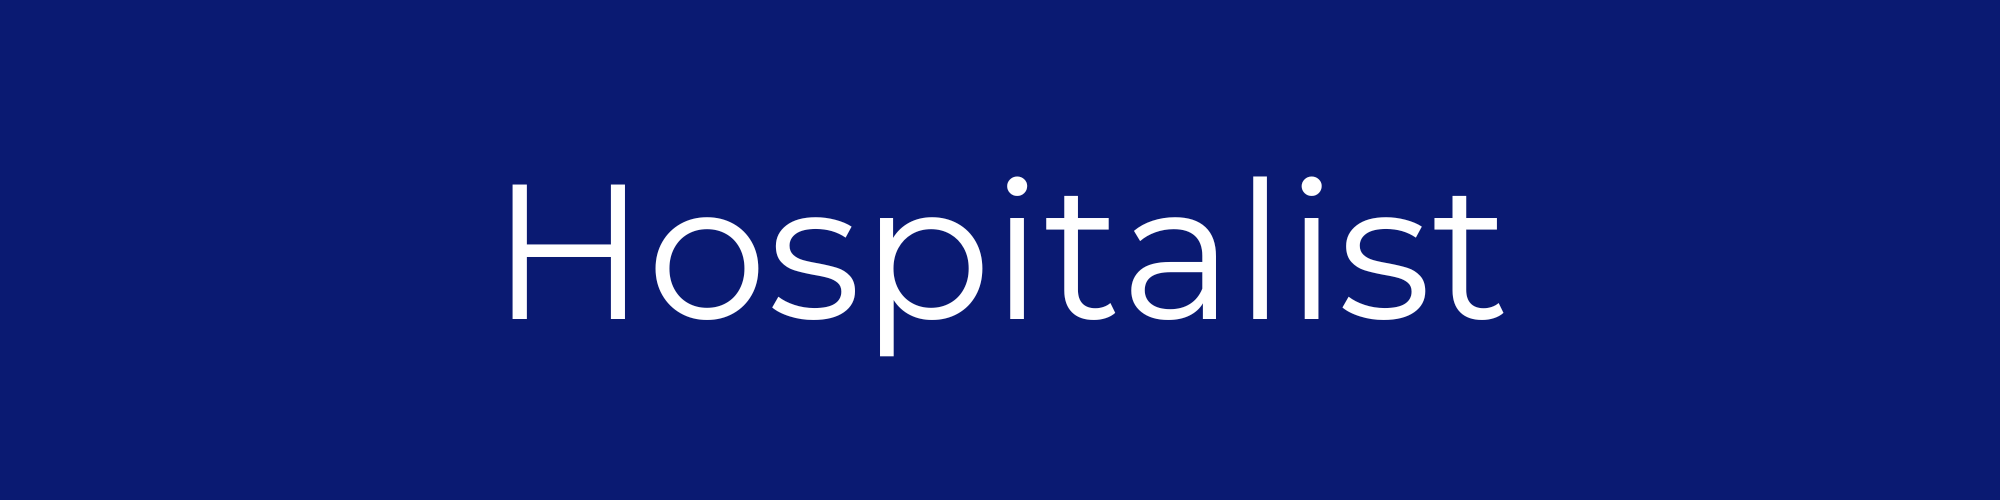 hospitalist-doctors-coastal-pediatric-associates.png